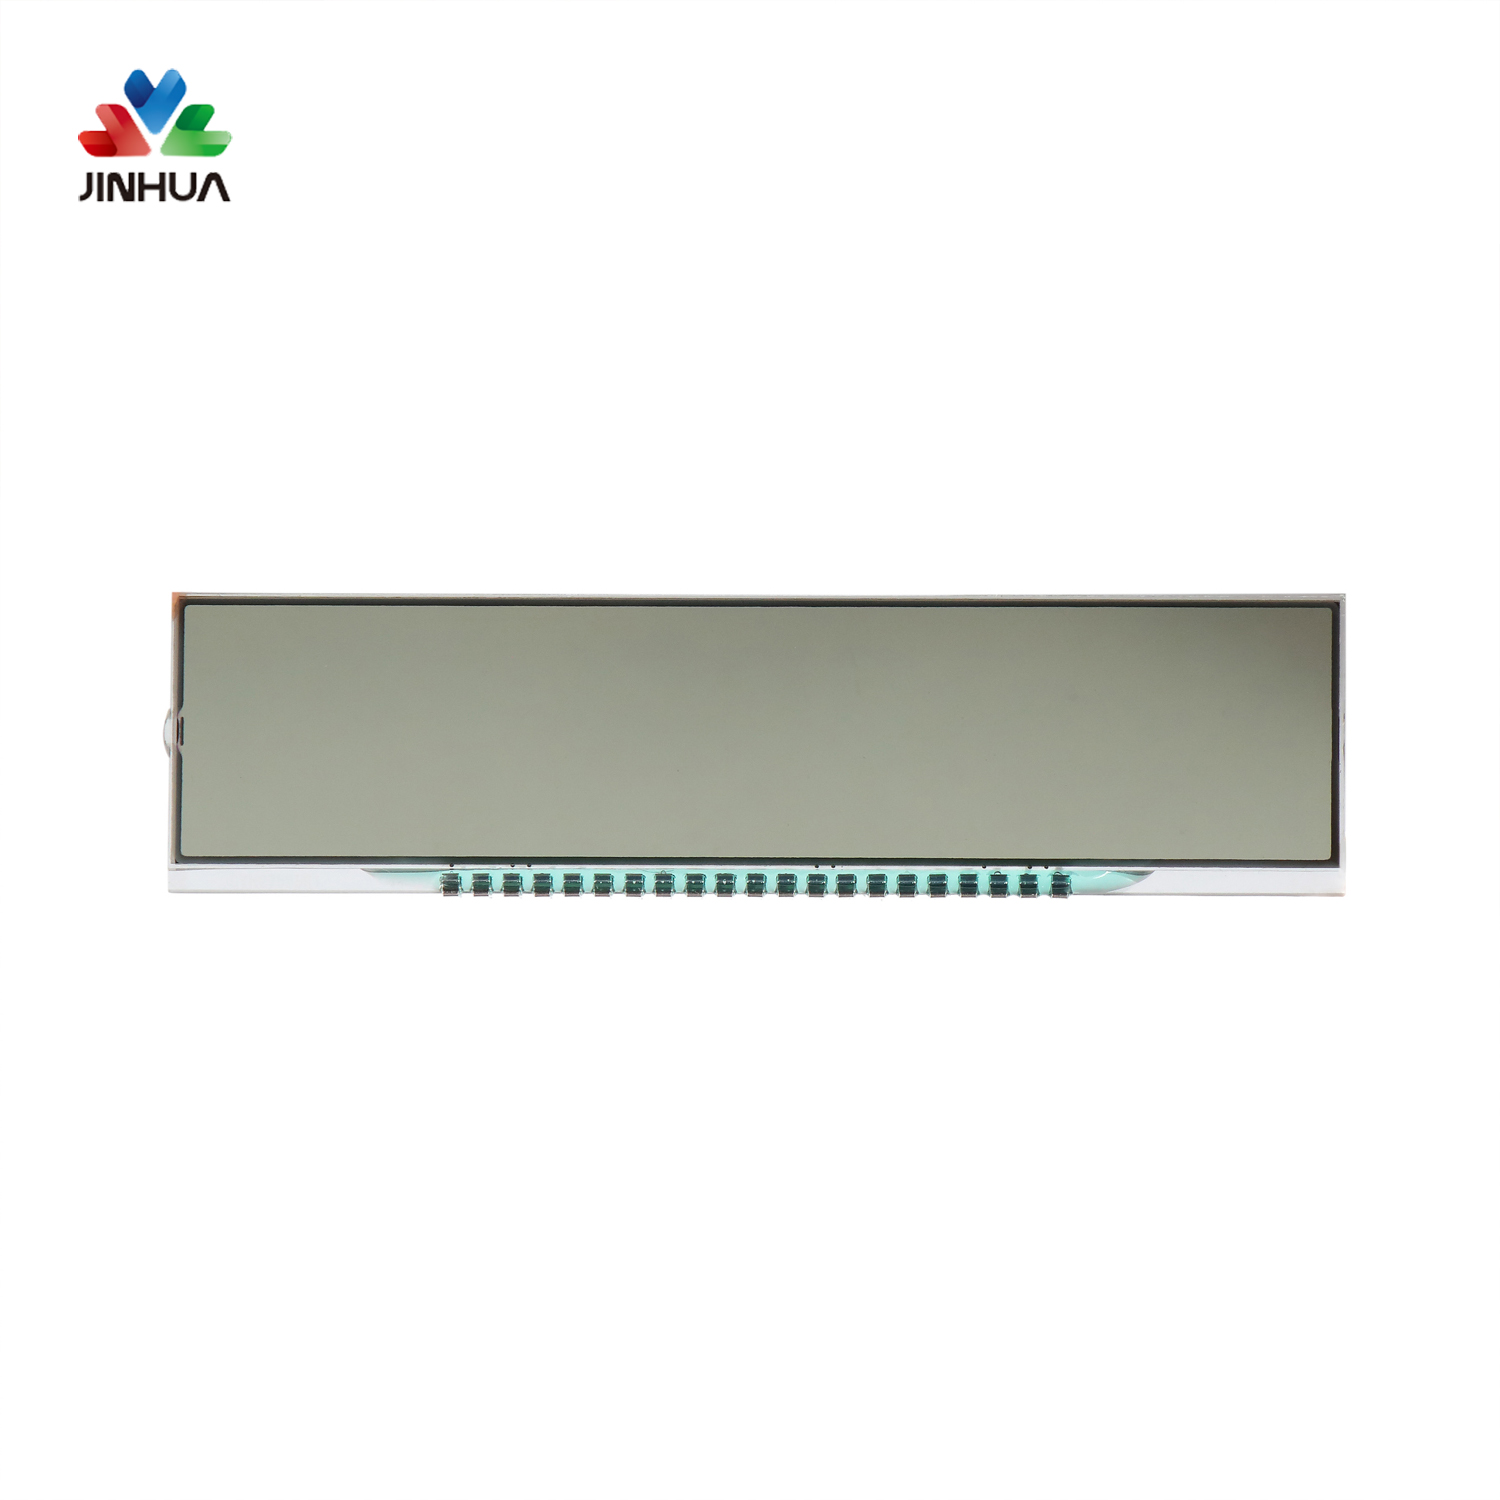 Pines Pantalla LCD de segmento VA transmisivo negativo para pantalla de dígitos